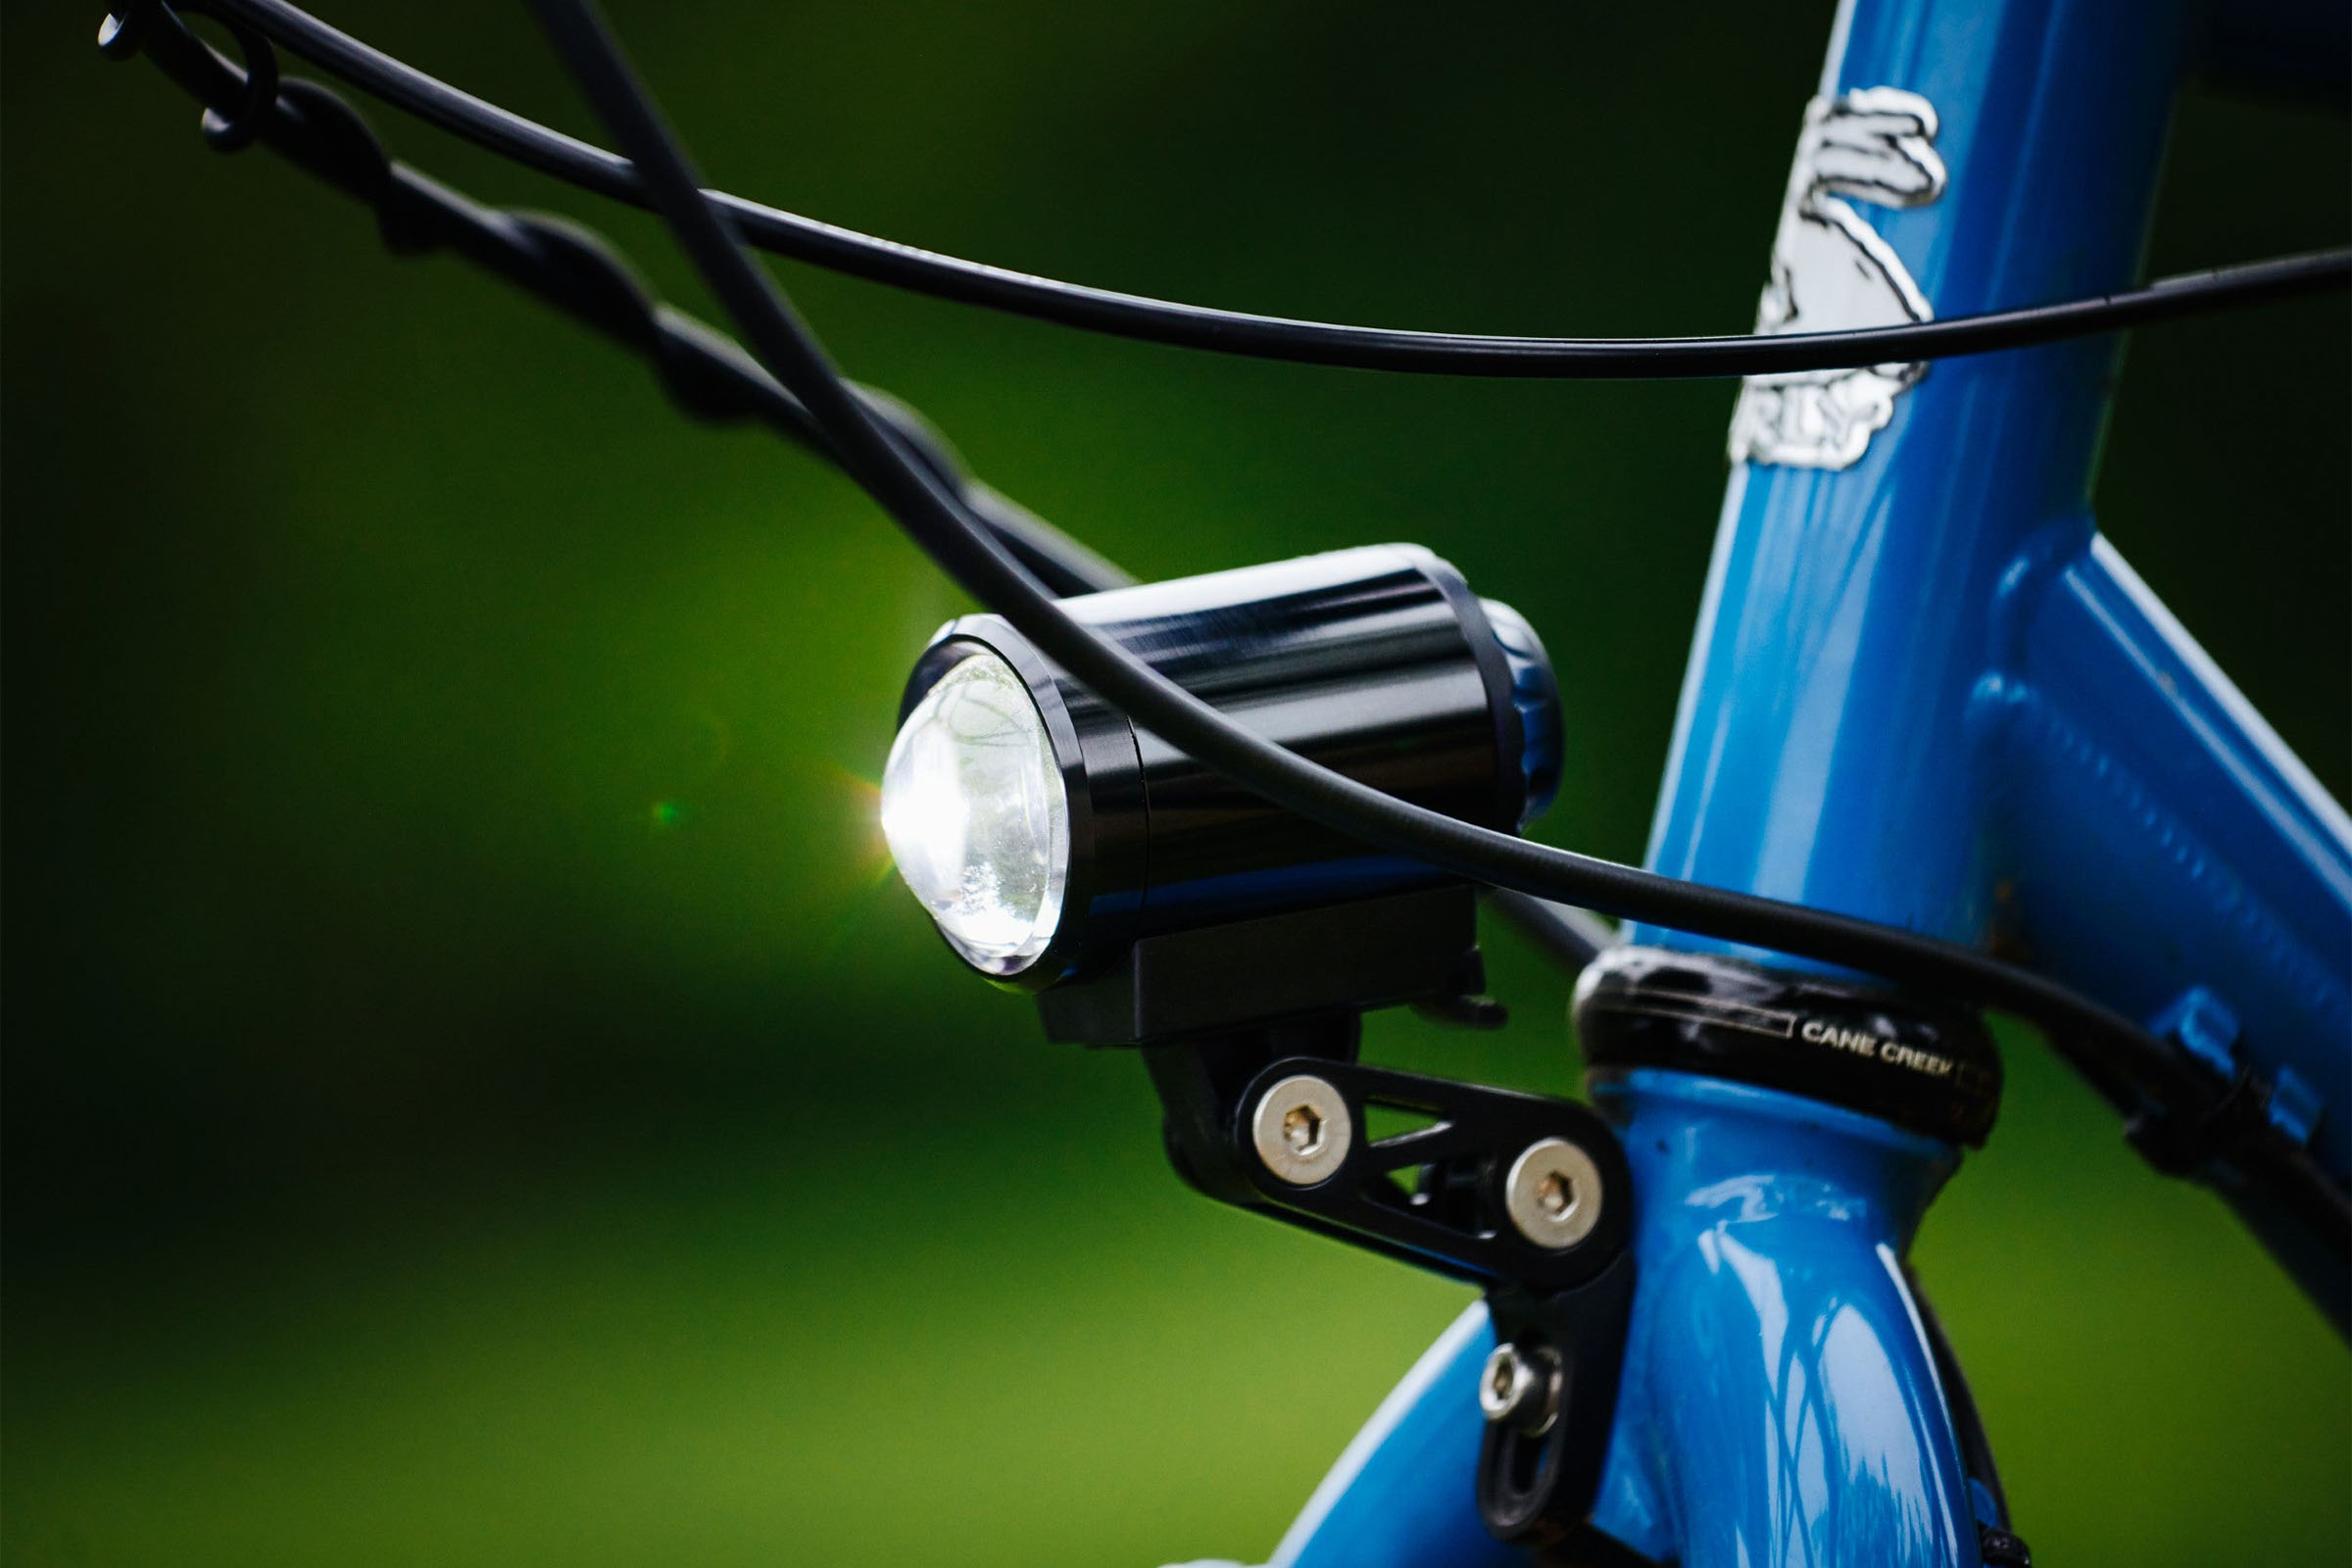 Bike Lights For Sale, LED Lights for Bikes